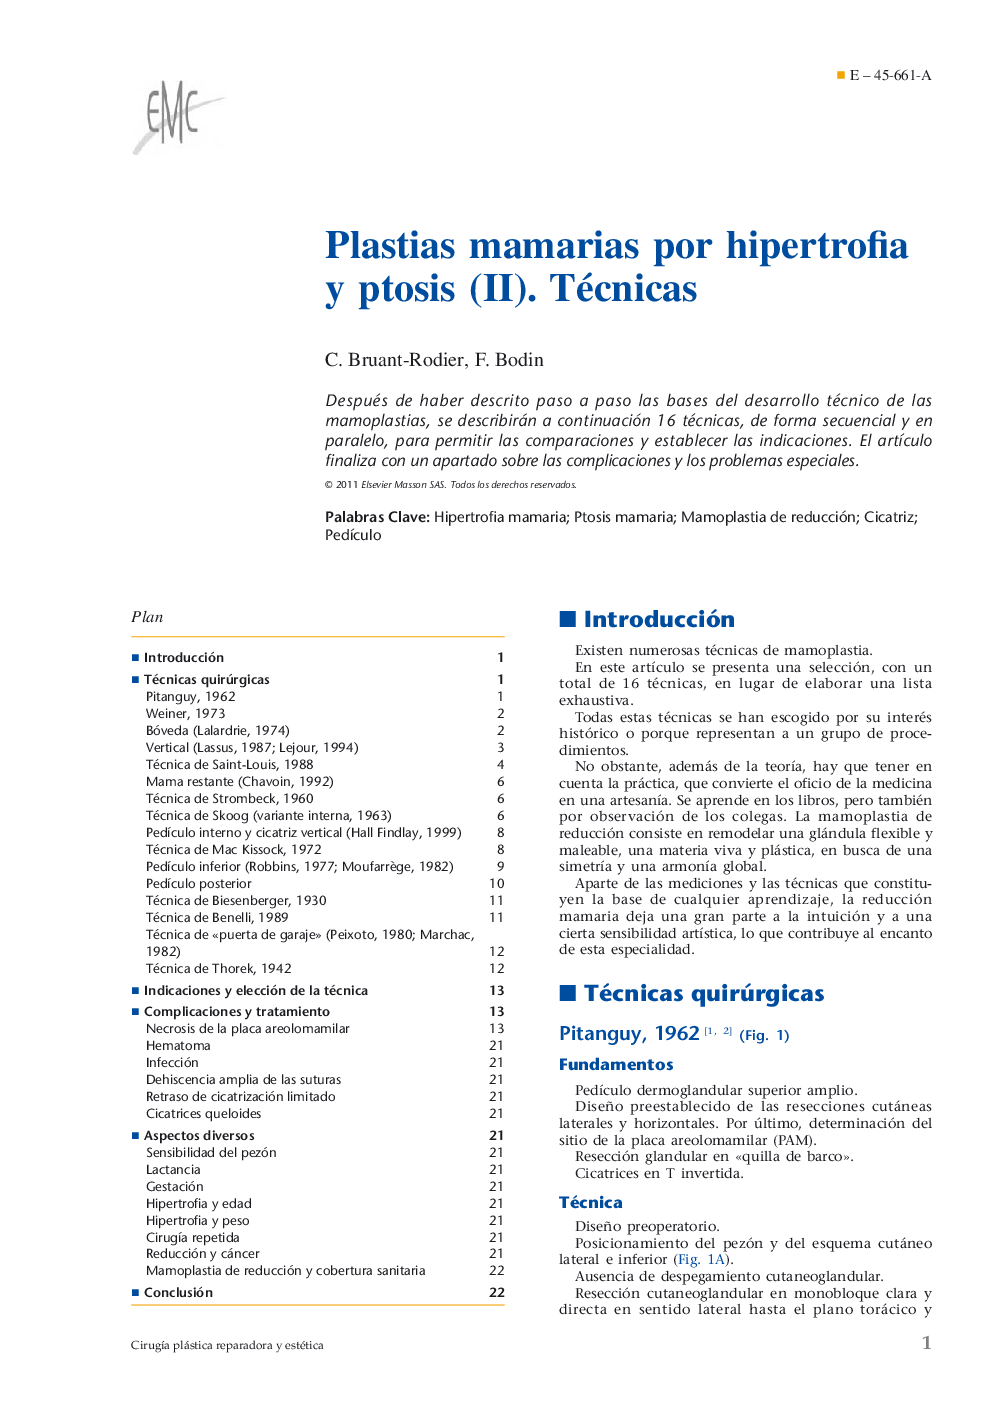 Plastias mamarias por hipertrofia y ptosis (II). Técnicas